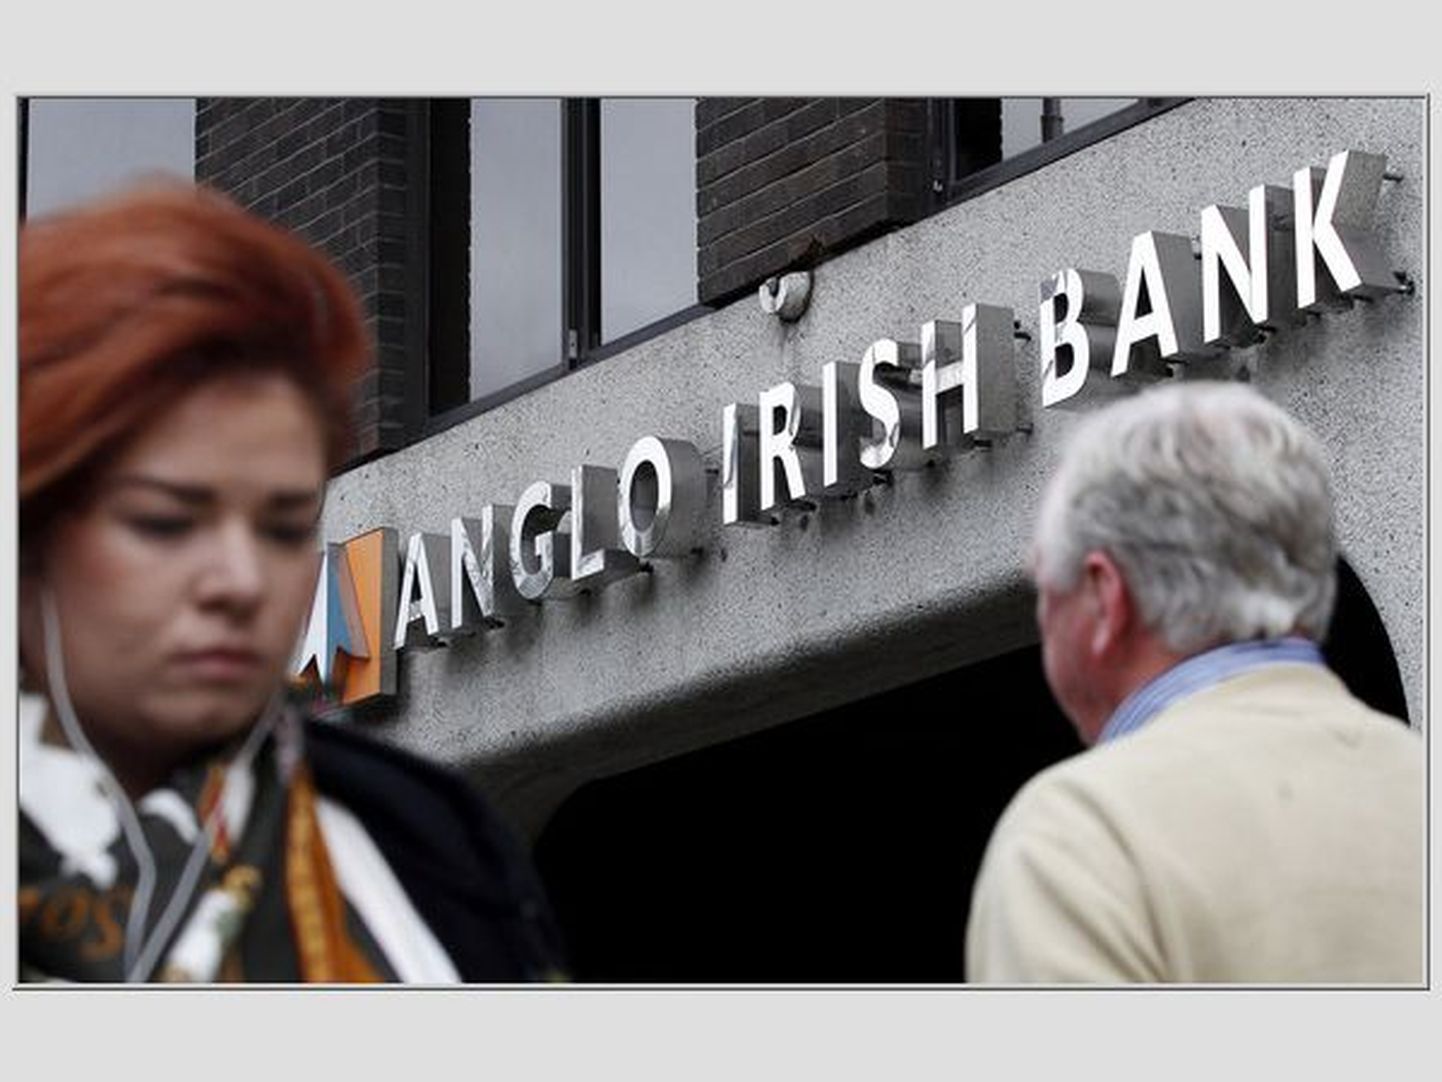 Anglo Irish Bank.